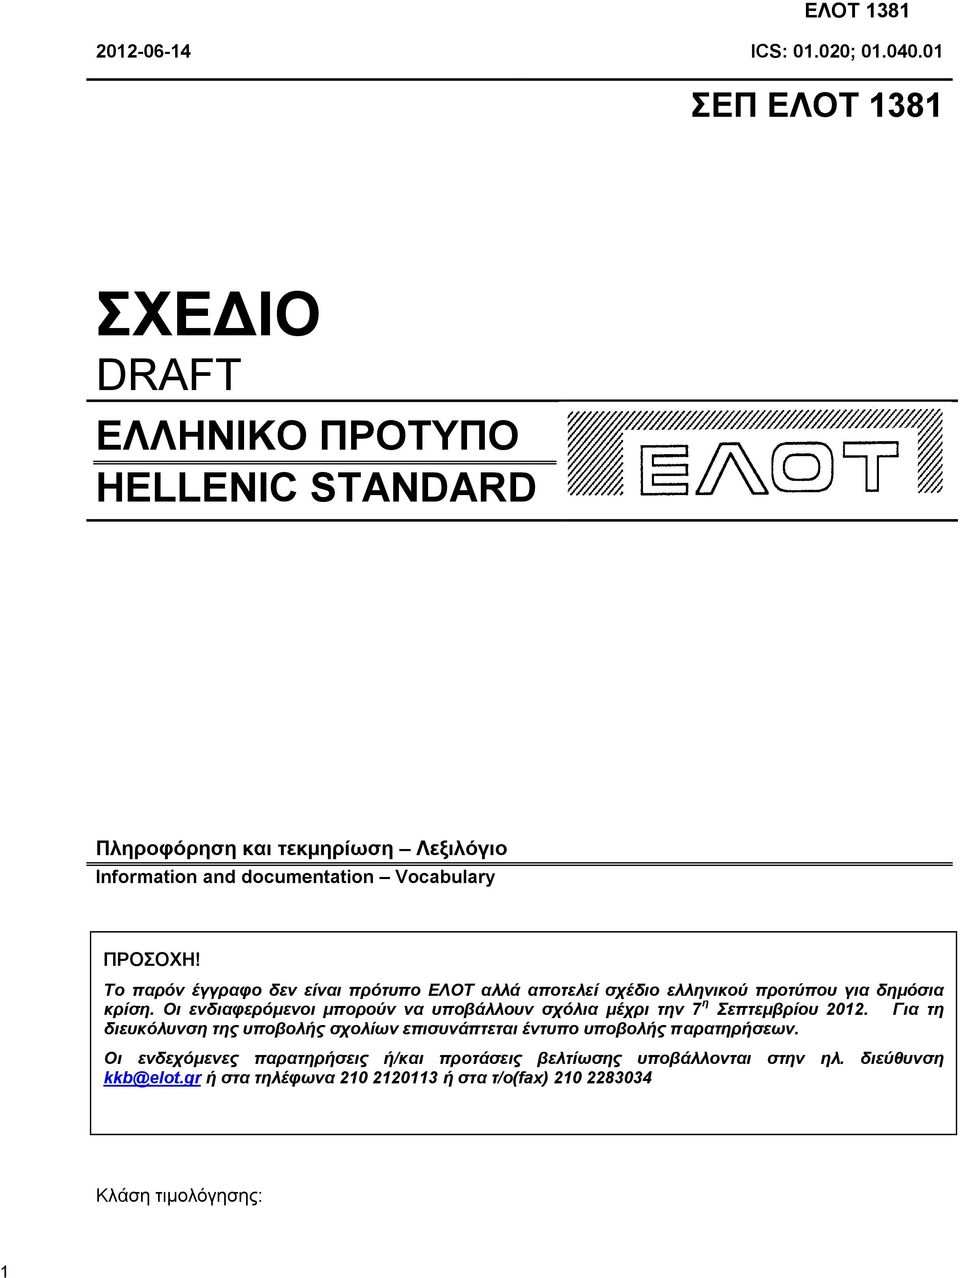 Το παρόν έγγραφο δεν είναι πρότυπο ΕΛΟΤ αλλά αποτελεί σχέδιο ελληνικού προτύπου για δημόσια κρίση.